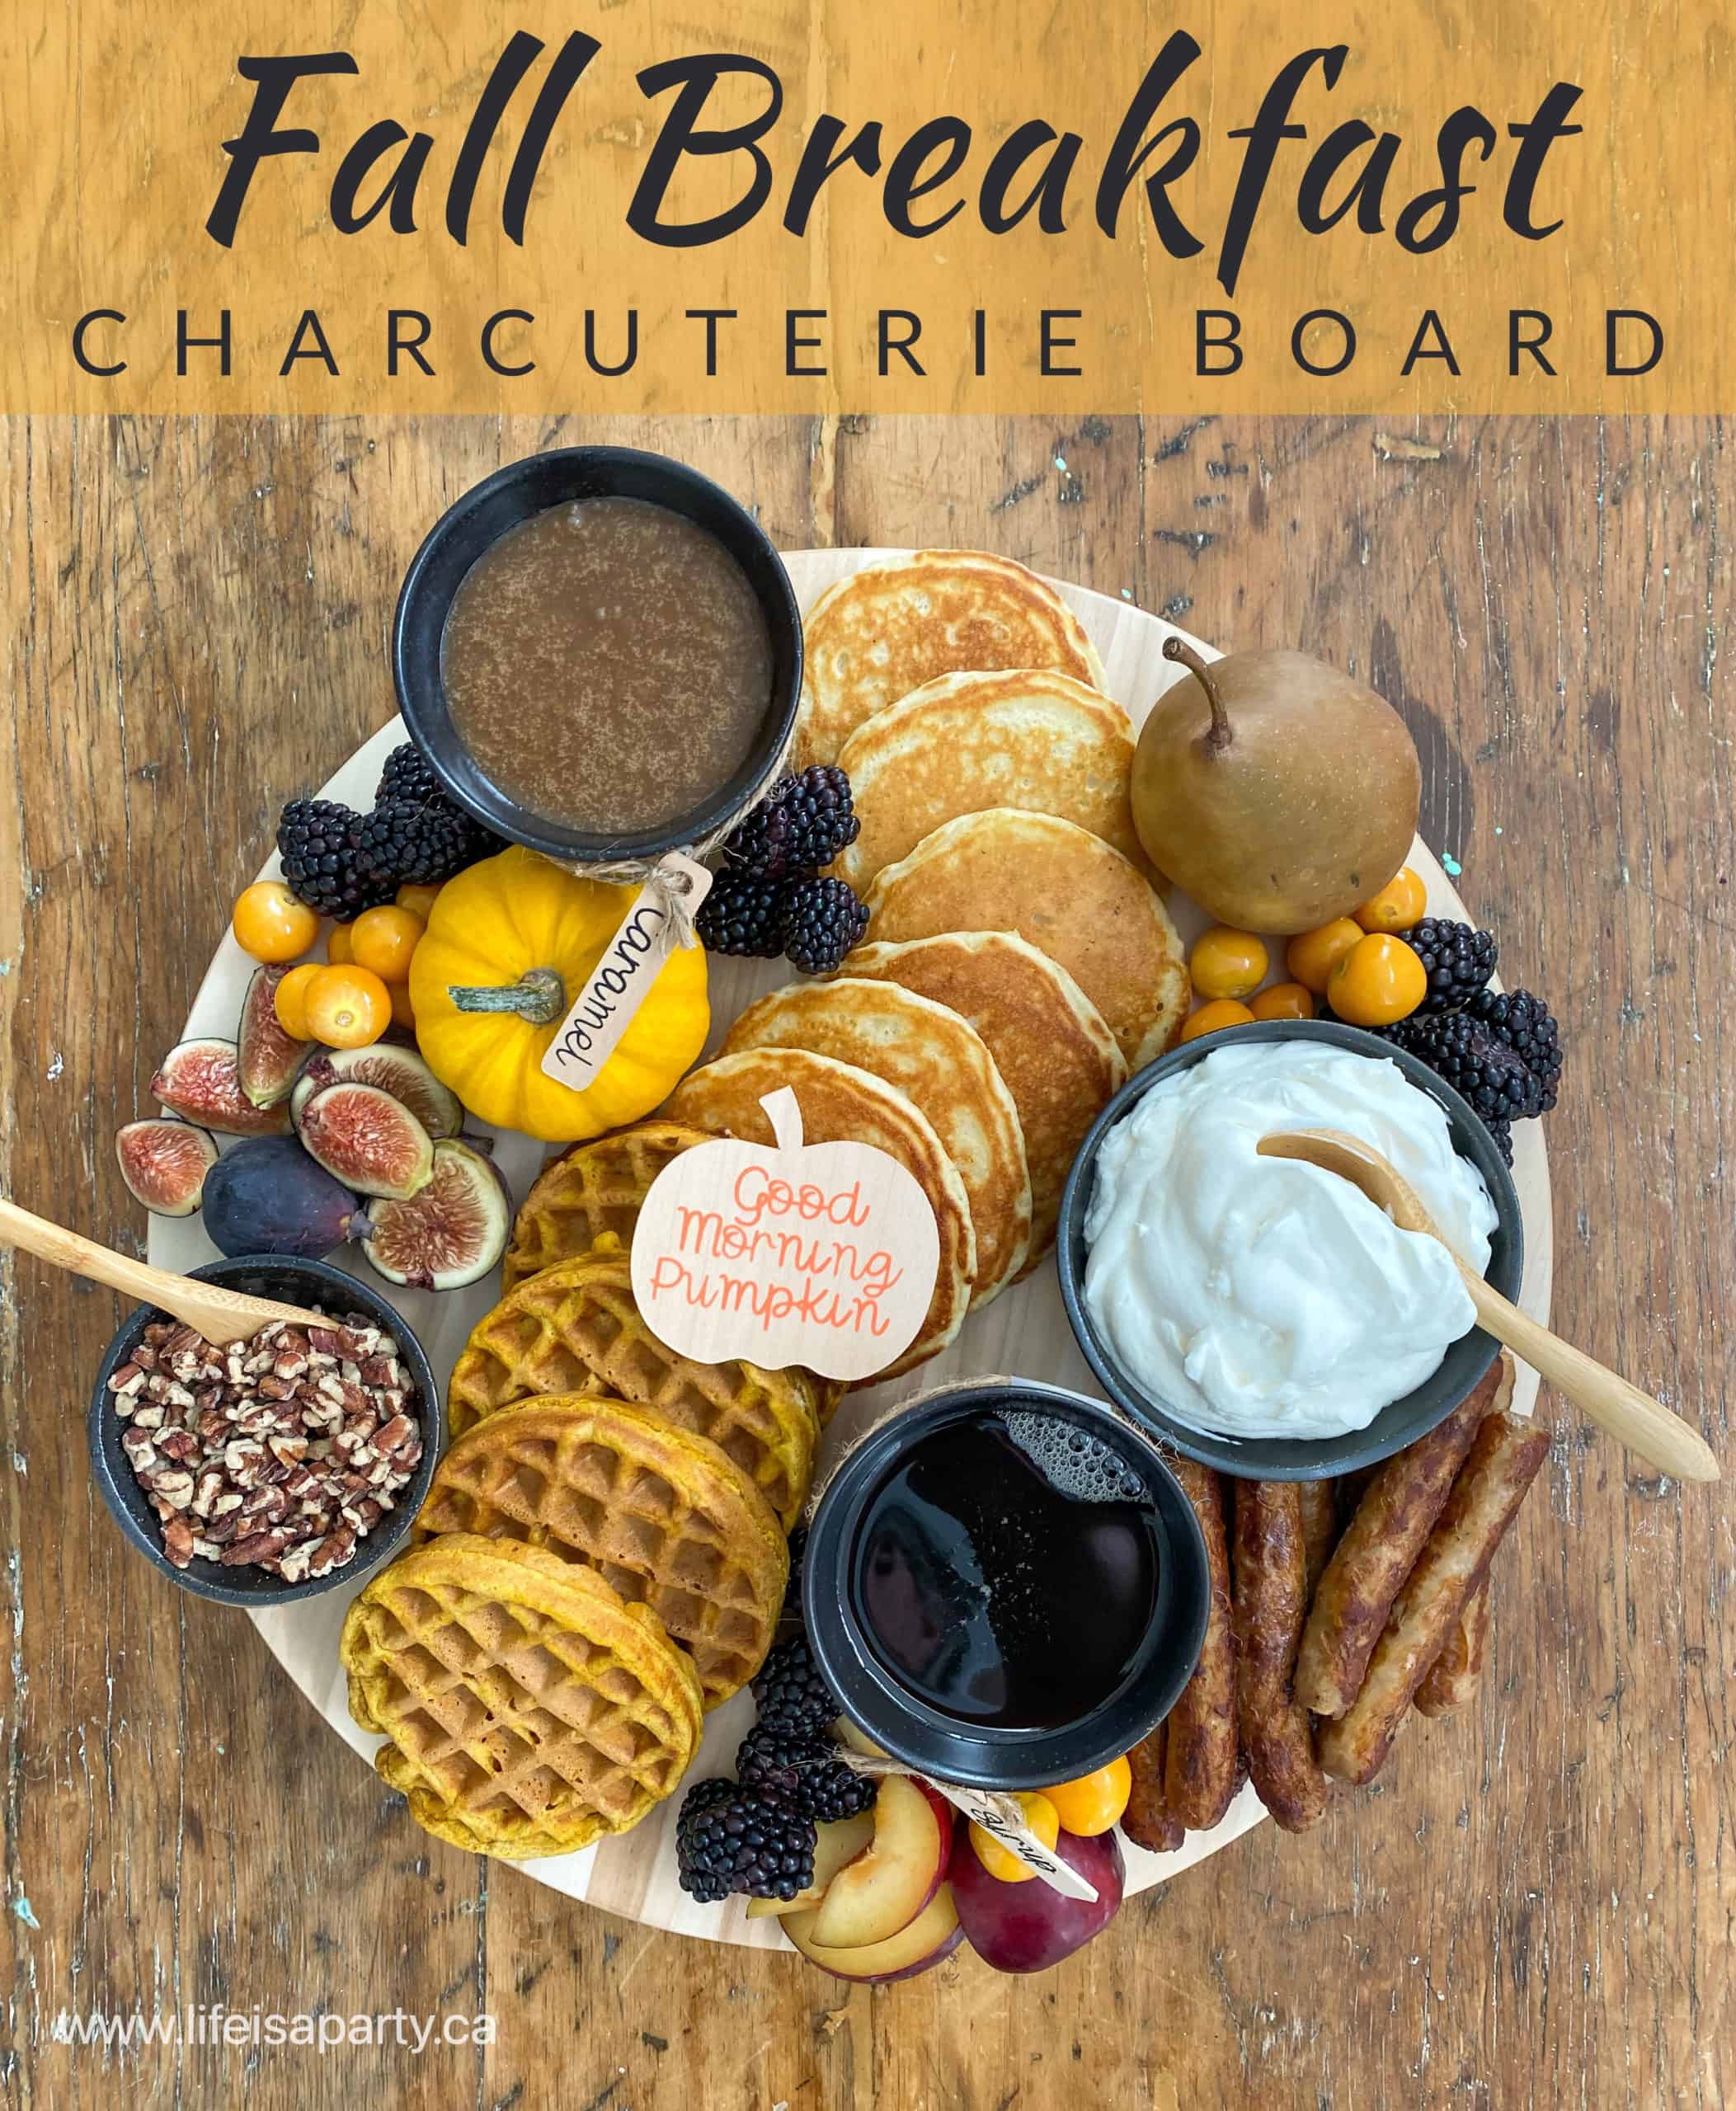 Fall Breakfast Charcuterie Board